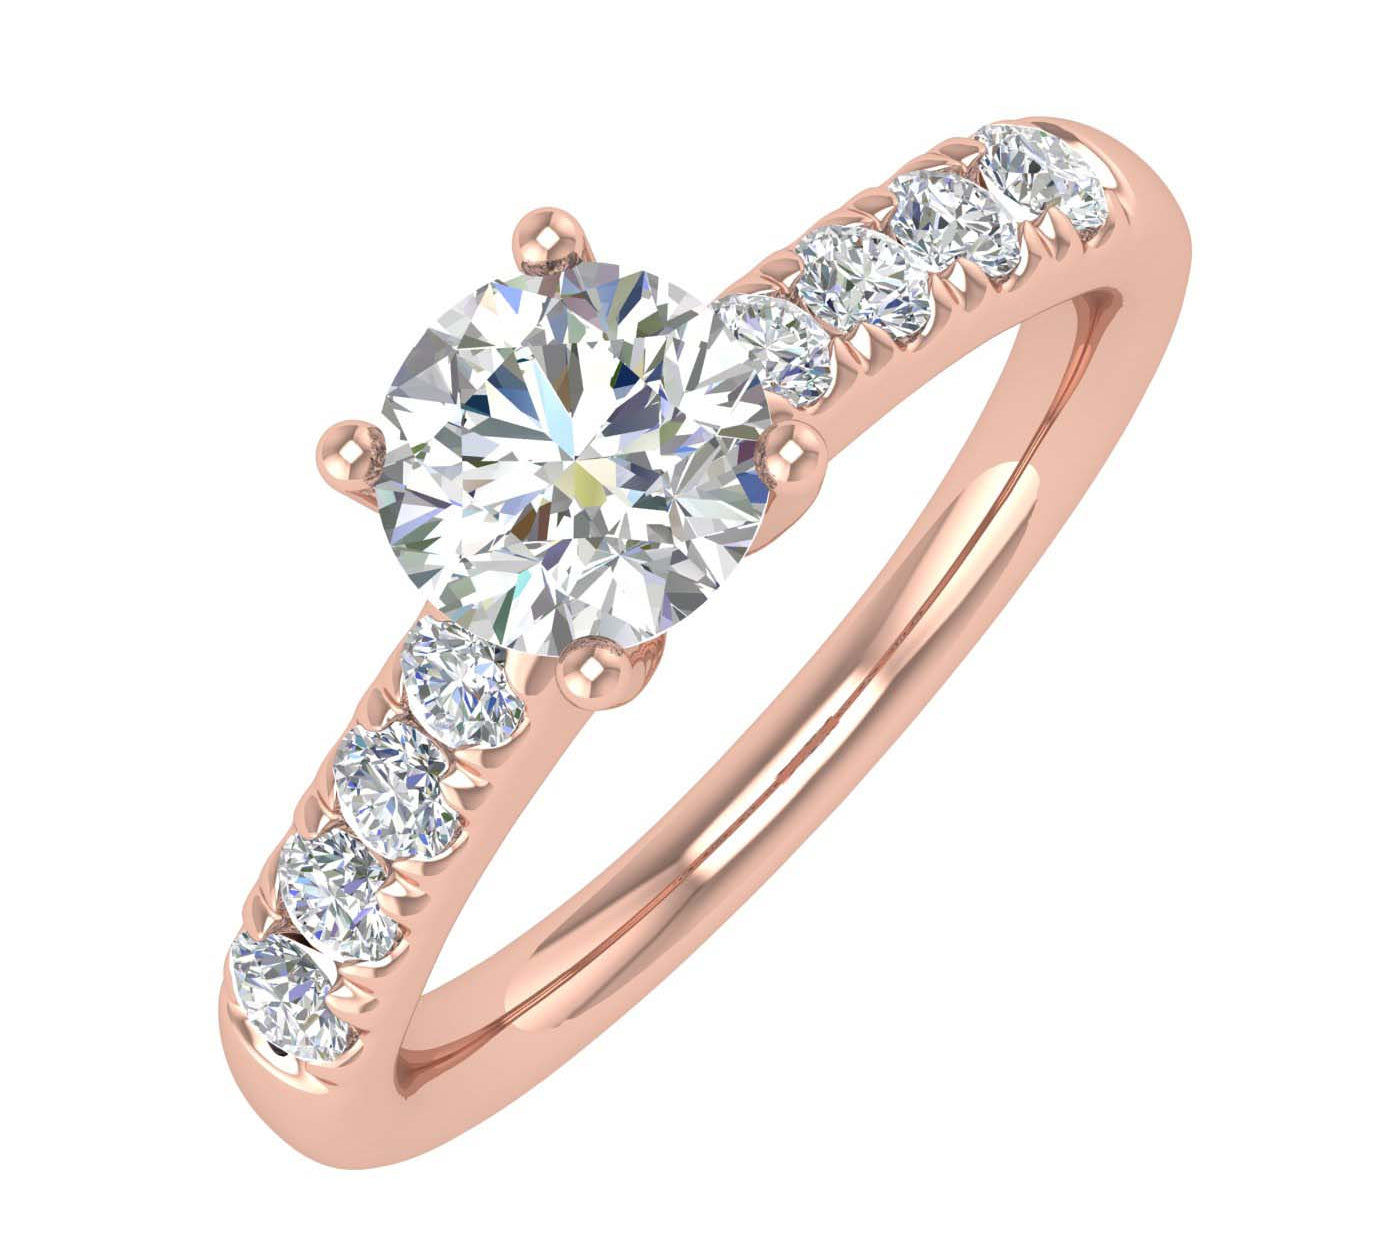 3/4 Carat Diamond Engagement Ring Band in Gold - IGI Certified